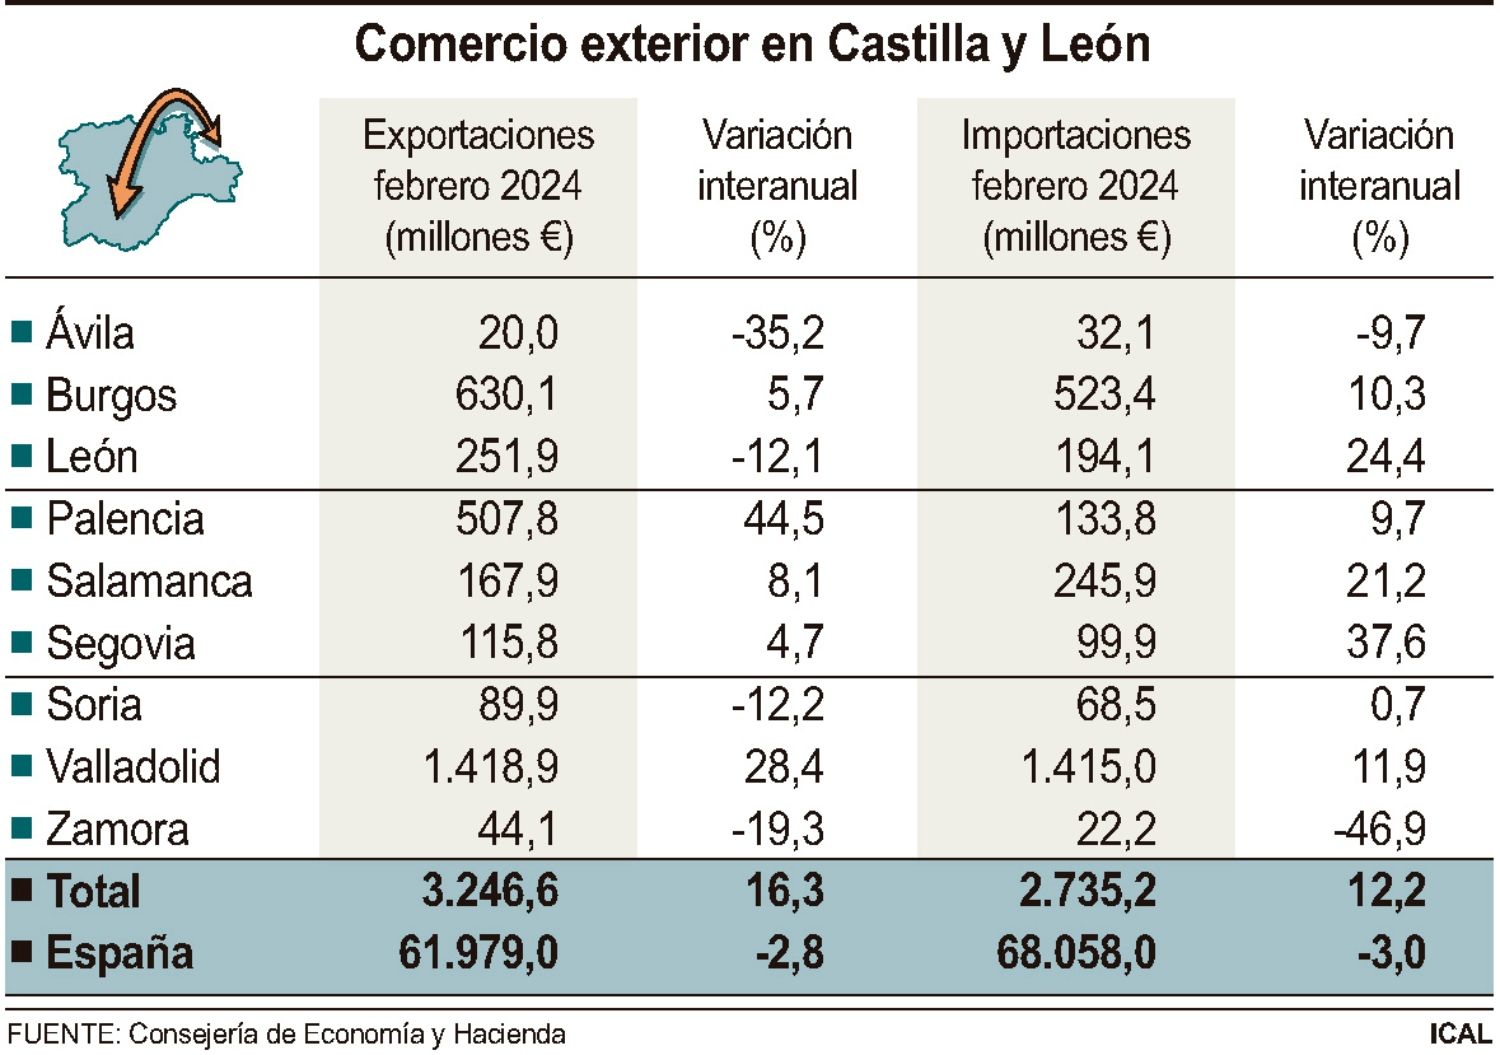 Grafico exportaciones e importaciones Castilla y León